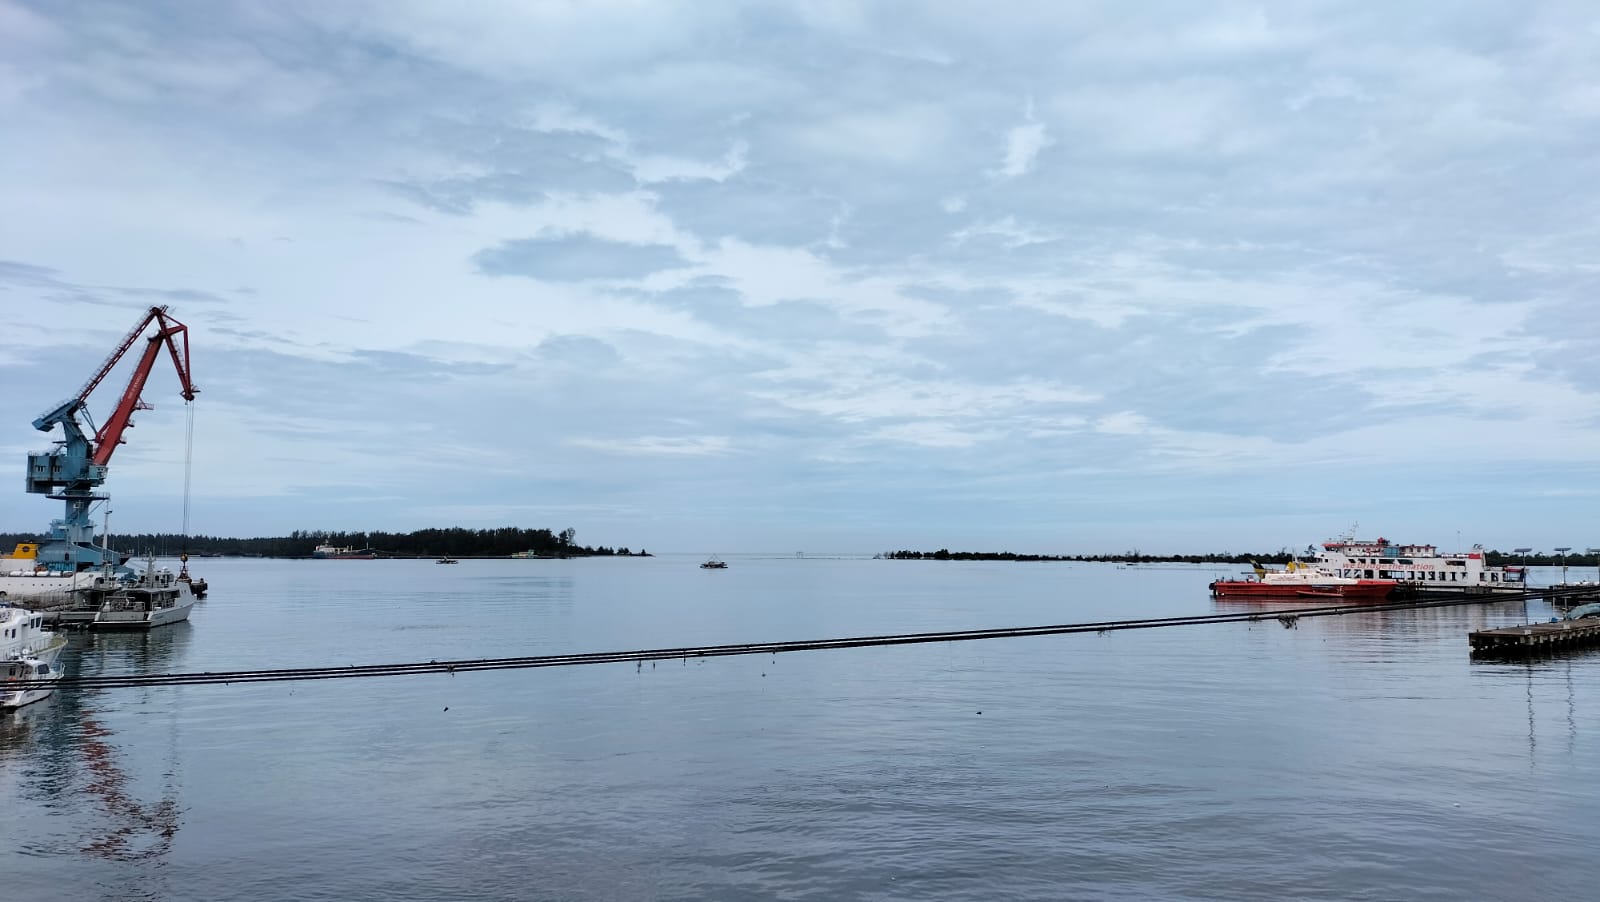 Bahaya, Semakin Lama Pelabuhan Pulau Baai Semakin Tergerus